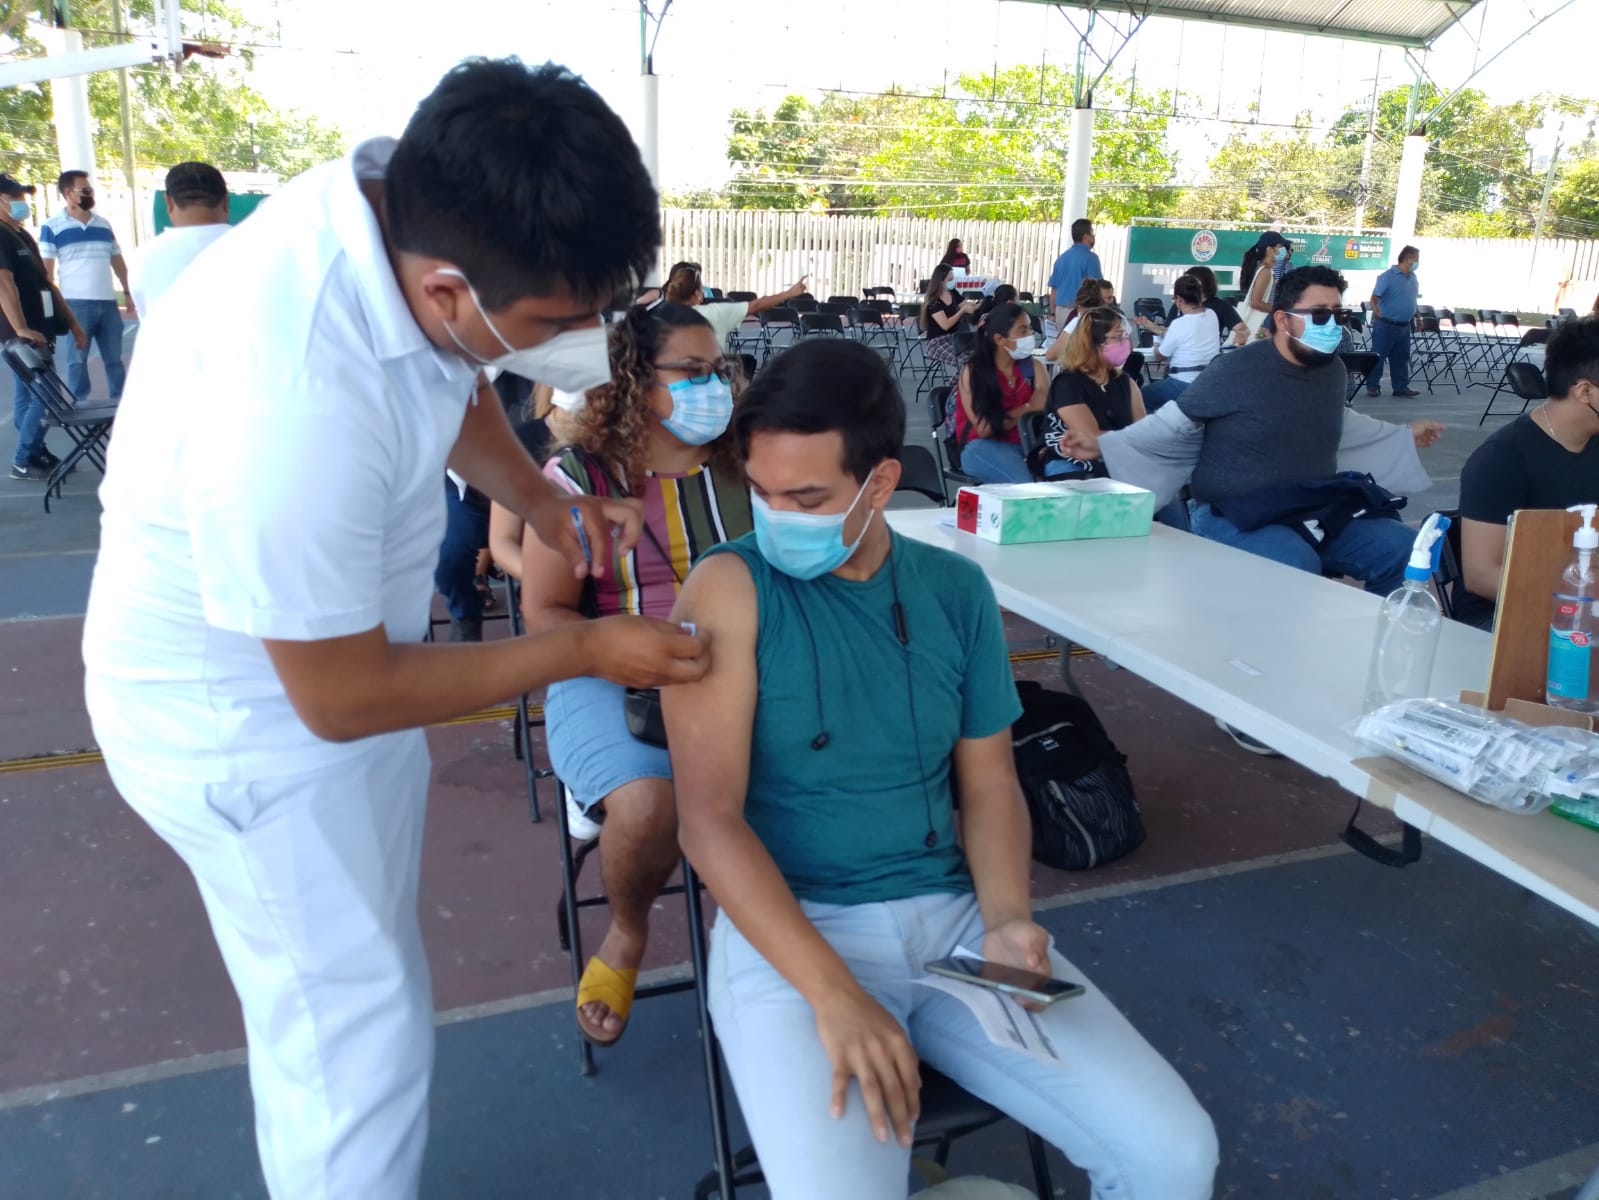 La vacuna contra el COVID-19 podrá ser aplicada a menores de 12 años en adelante en todo México